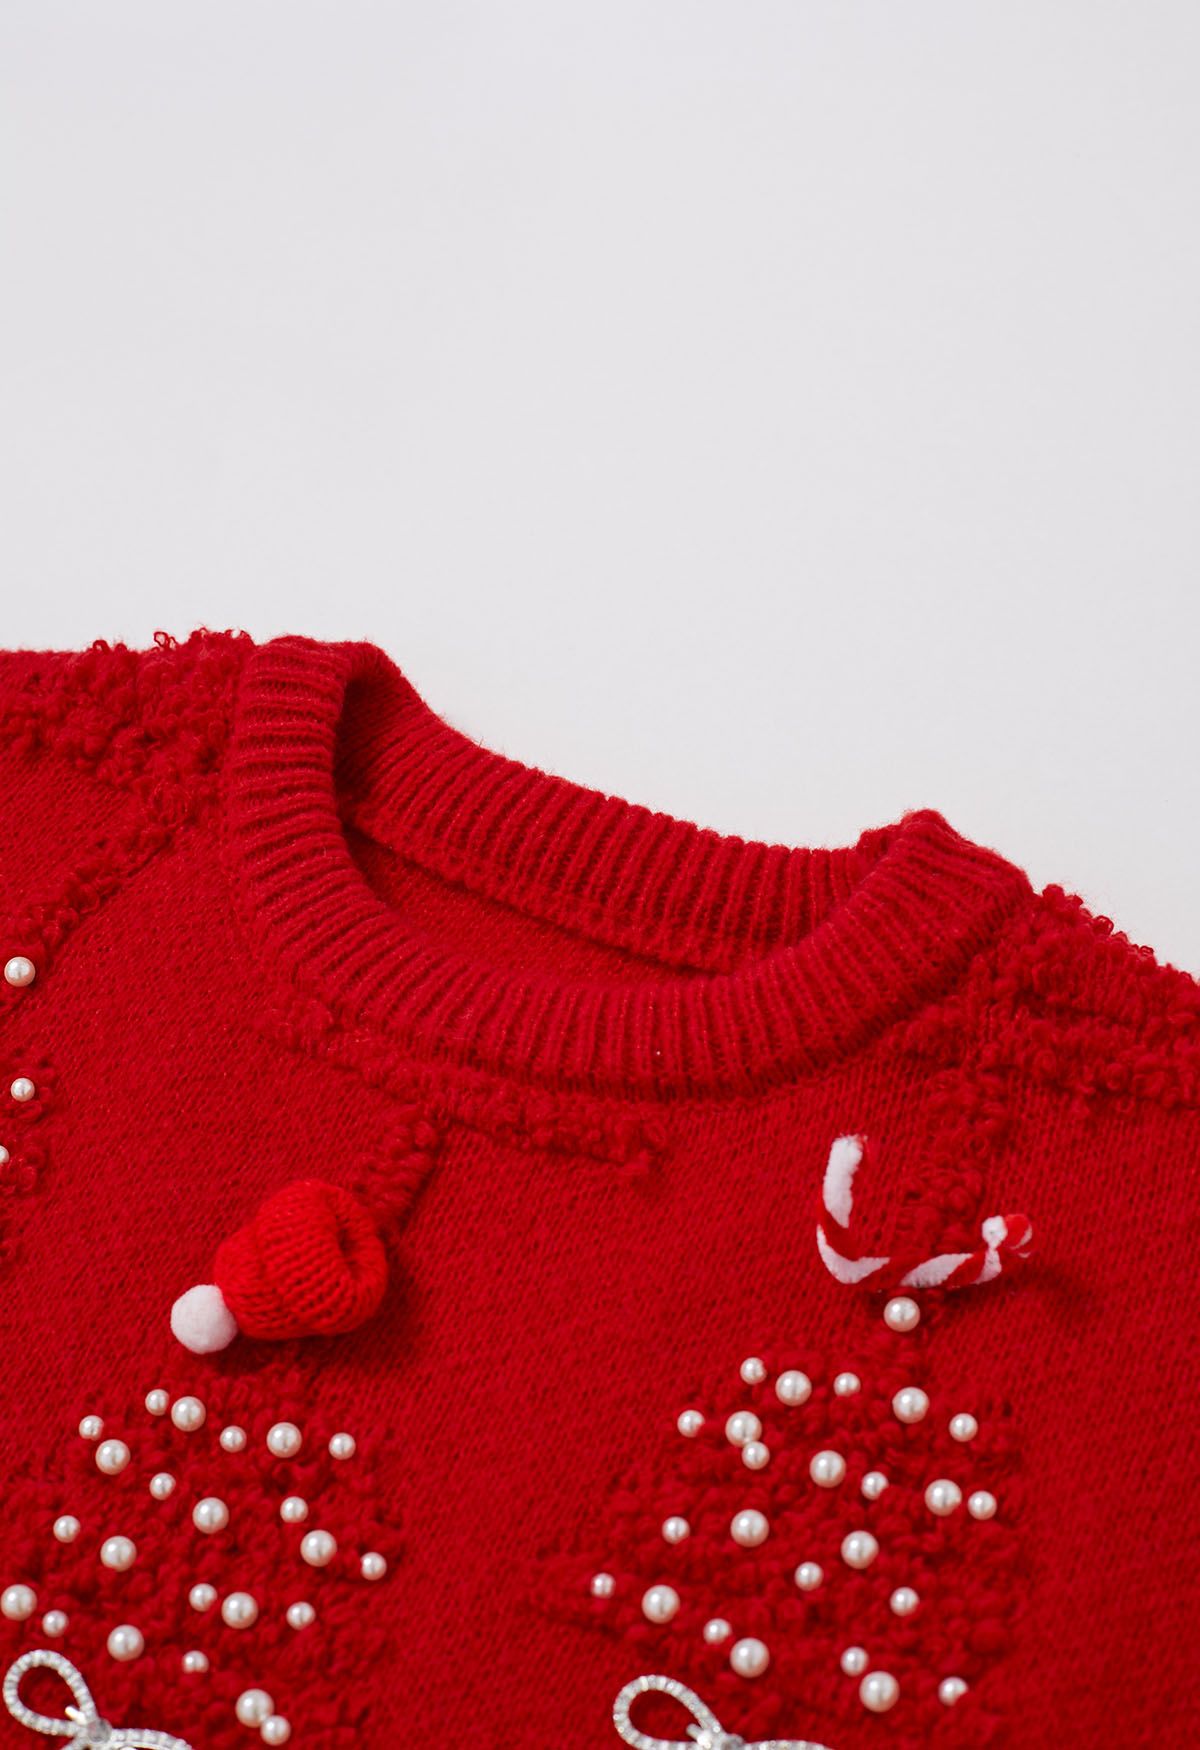 Suéter de punto con lazo en relieve de árbol de Navidad de perlas en rojo